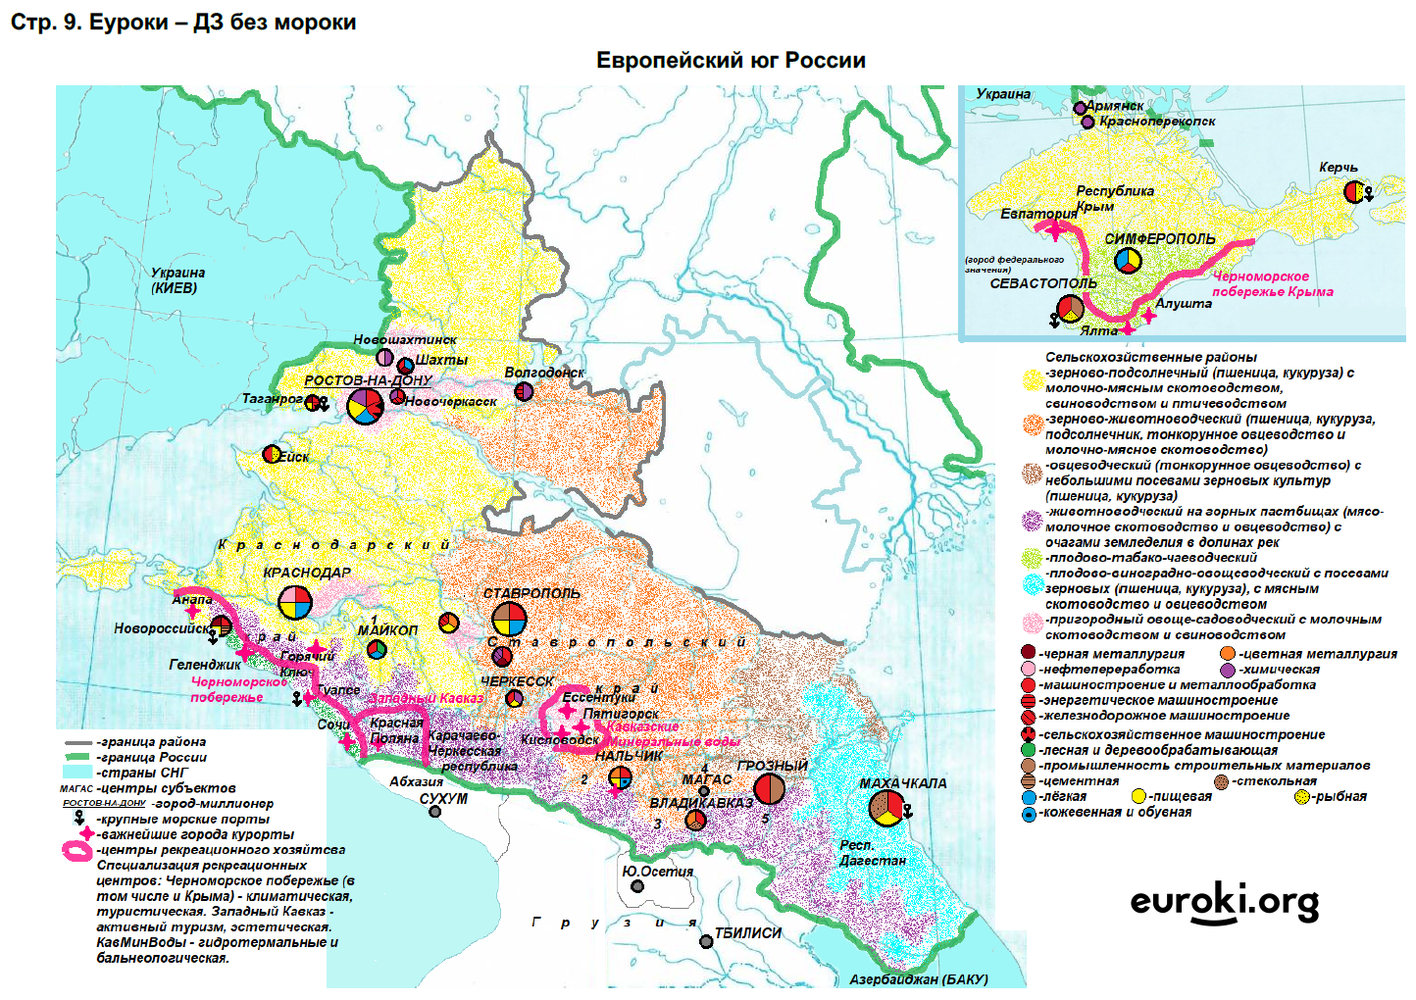 Конспект по географии европейский юг